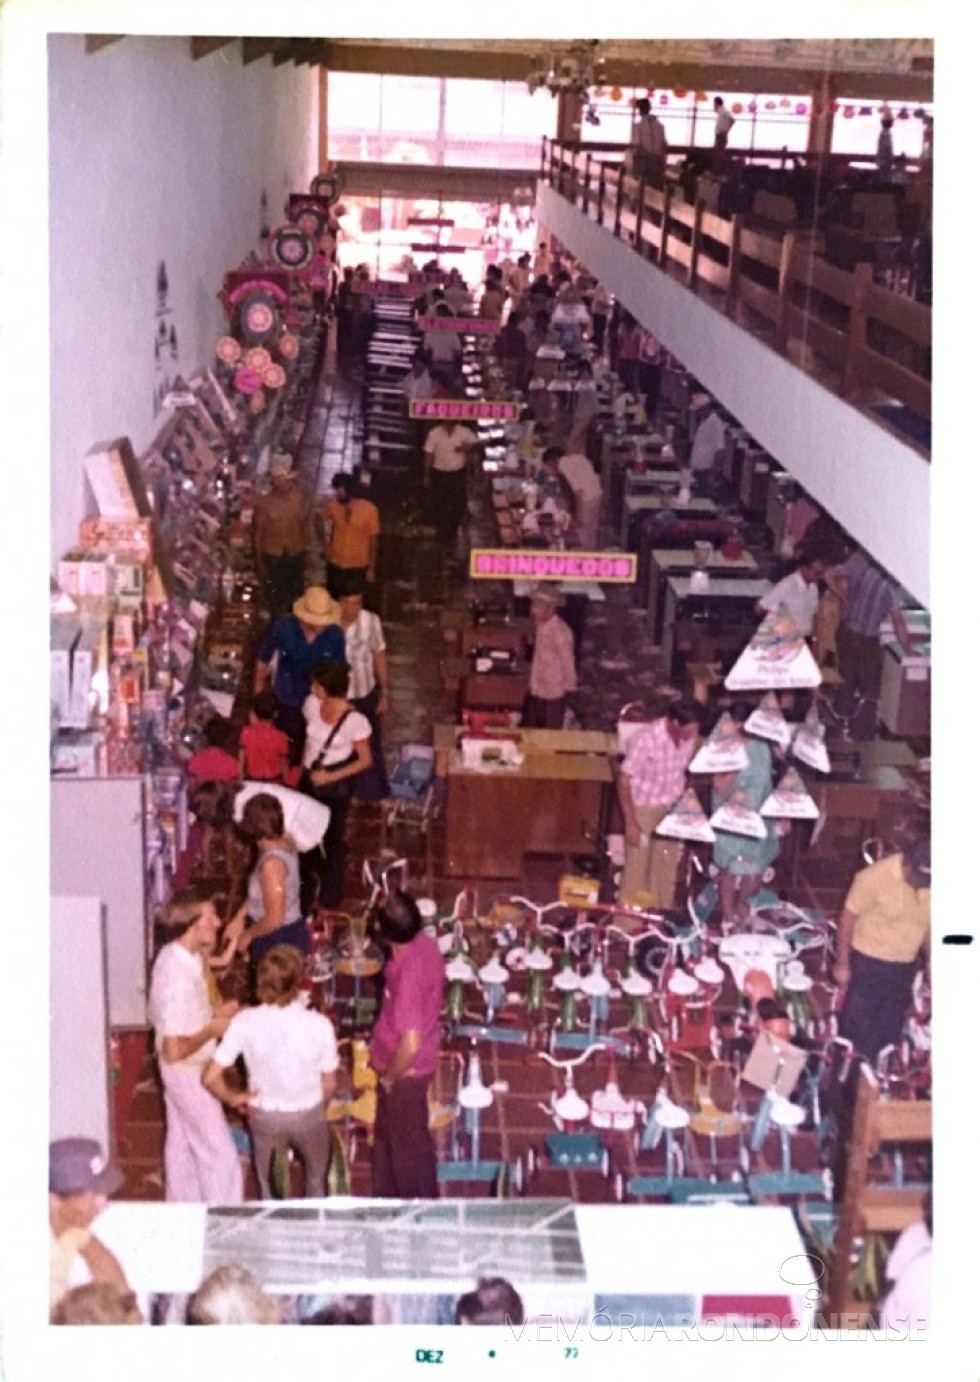 || Populares no interior da filial das Lojas Renascença após a solenidade de inaguração, em dezembro de 1977.
Imagem: Acervo Família Pequito - FOTO 13 - 